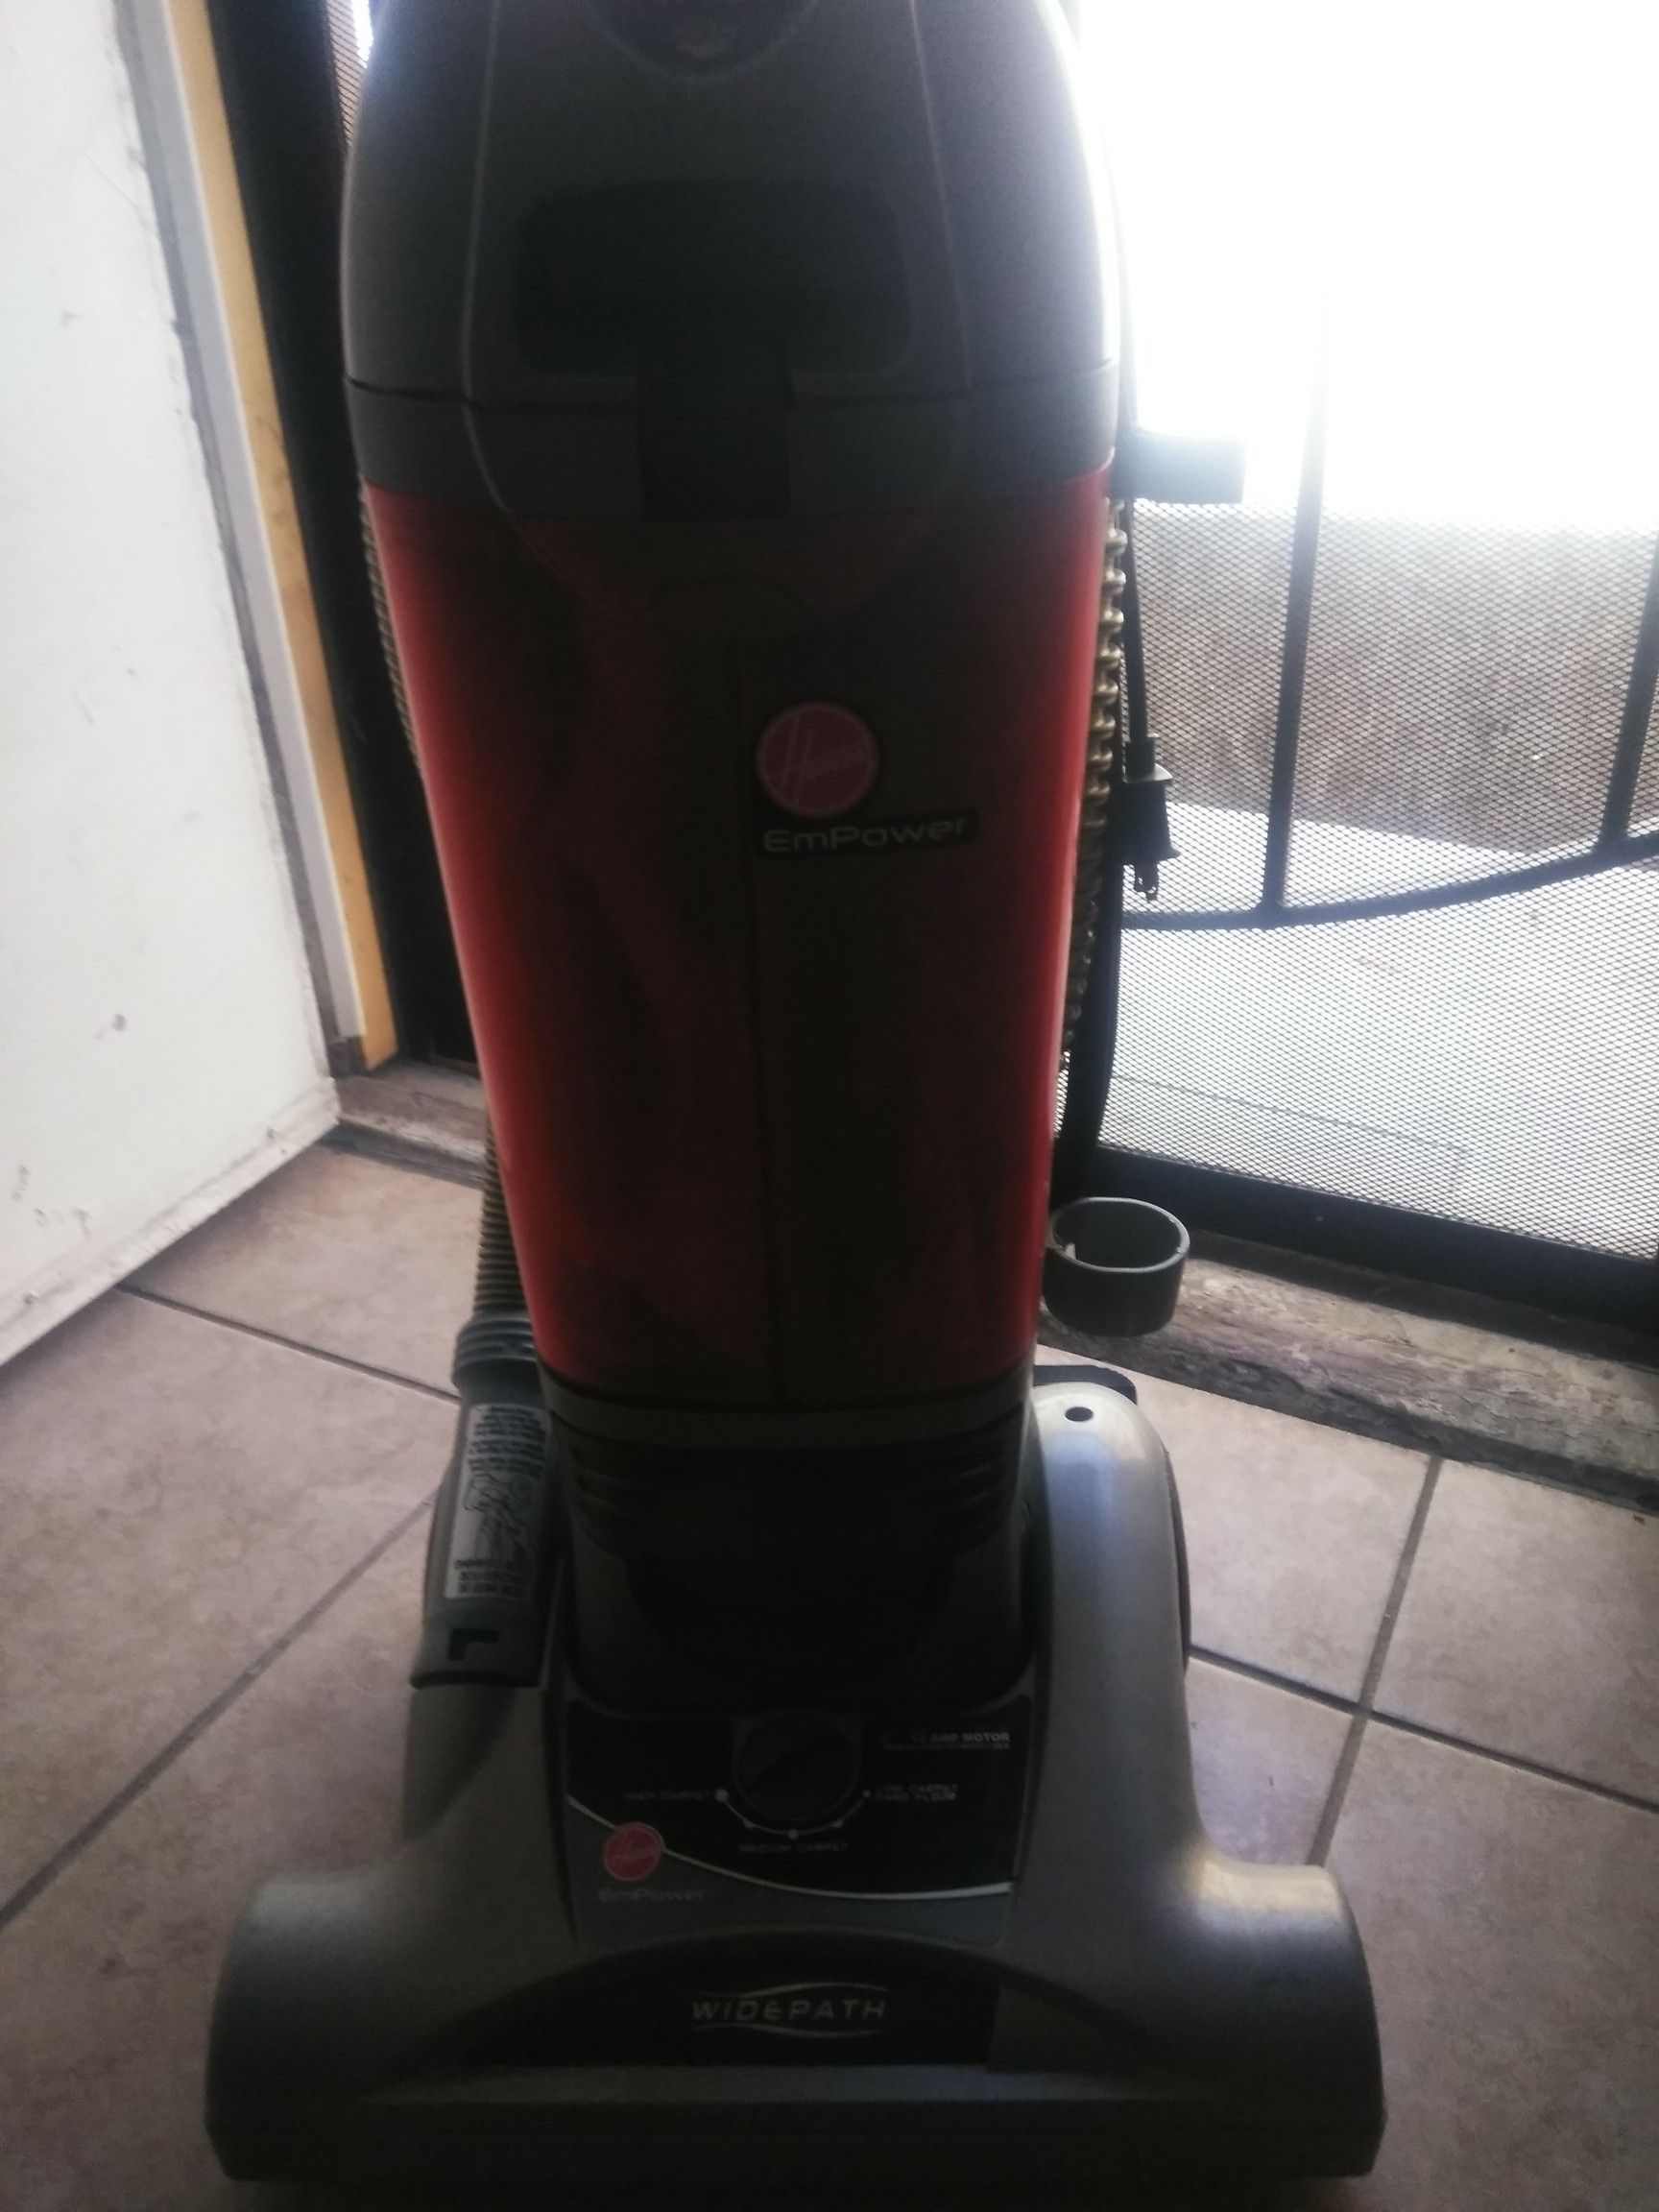 Hoover empower vacuum